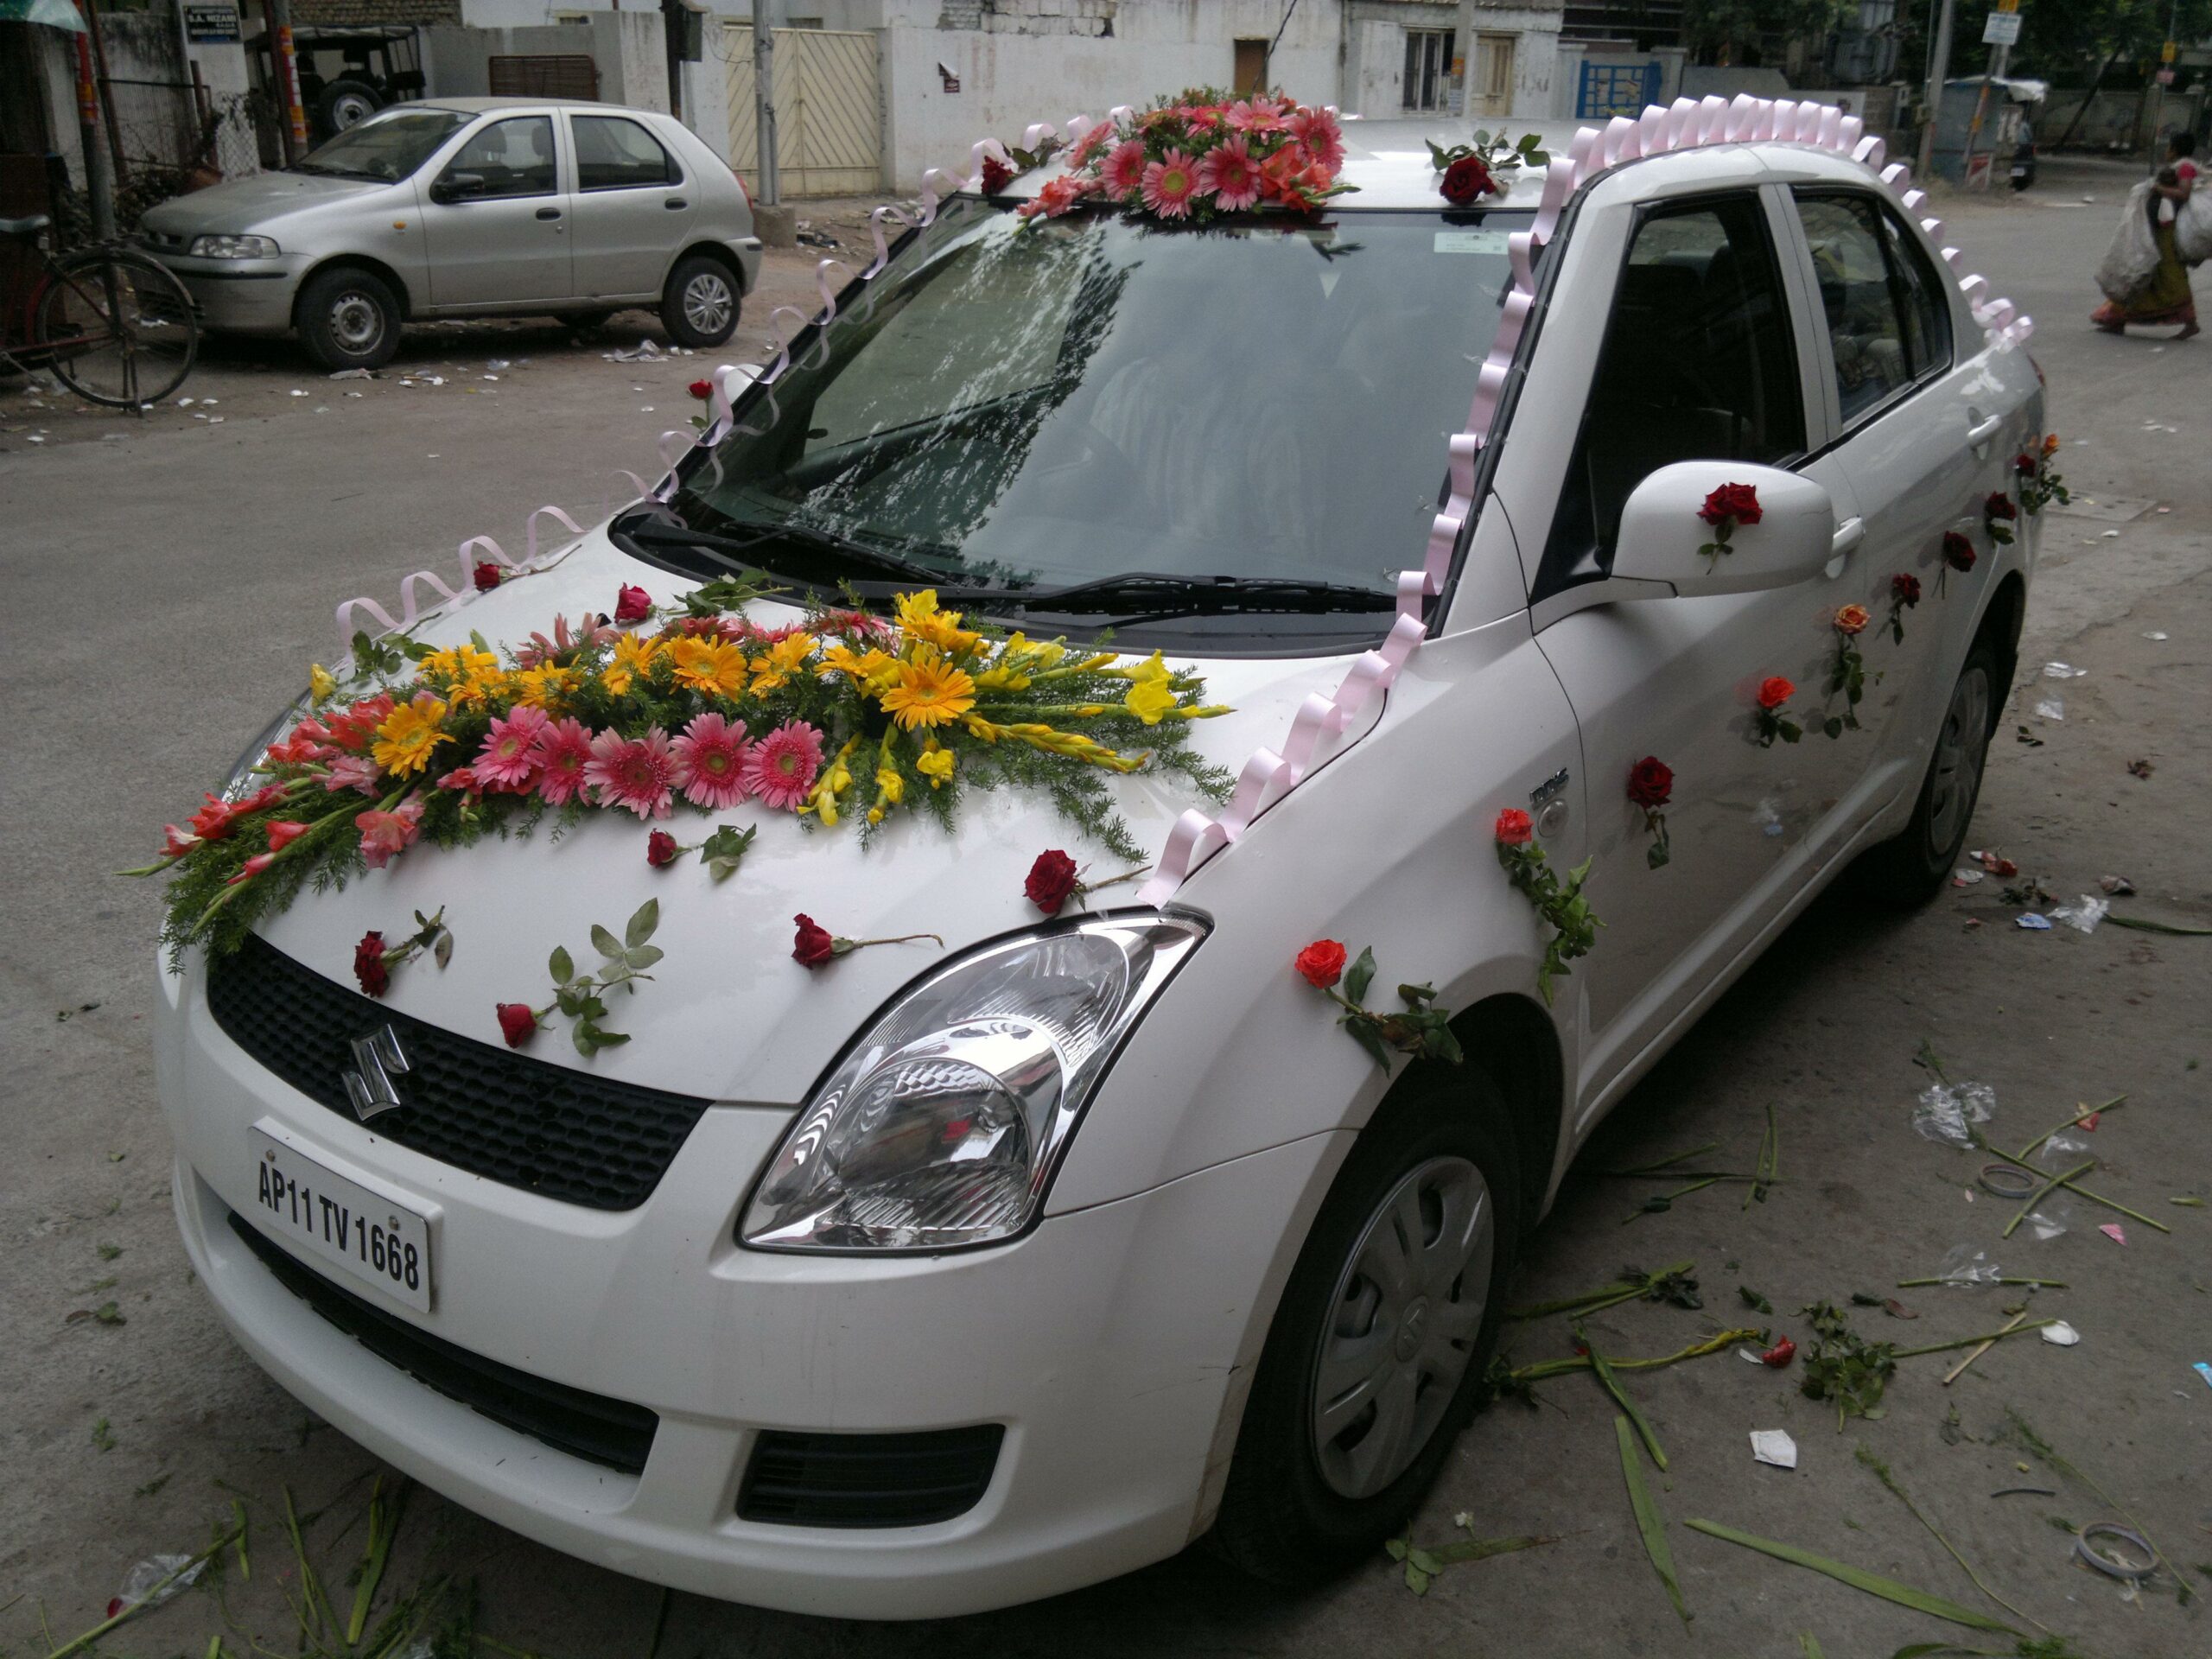 Maruti Suzuki Swift Dzire Dahej Car with Flowers